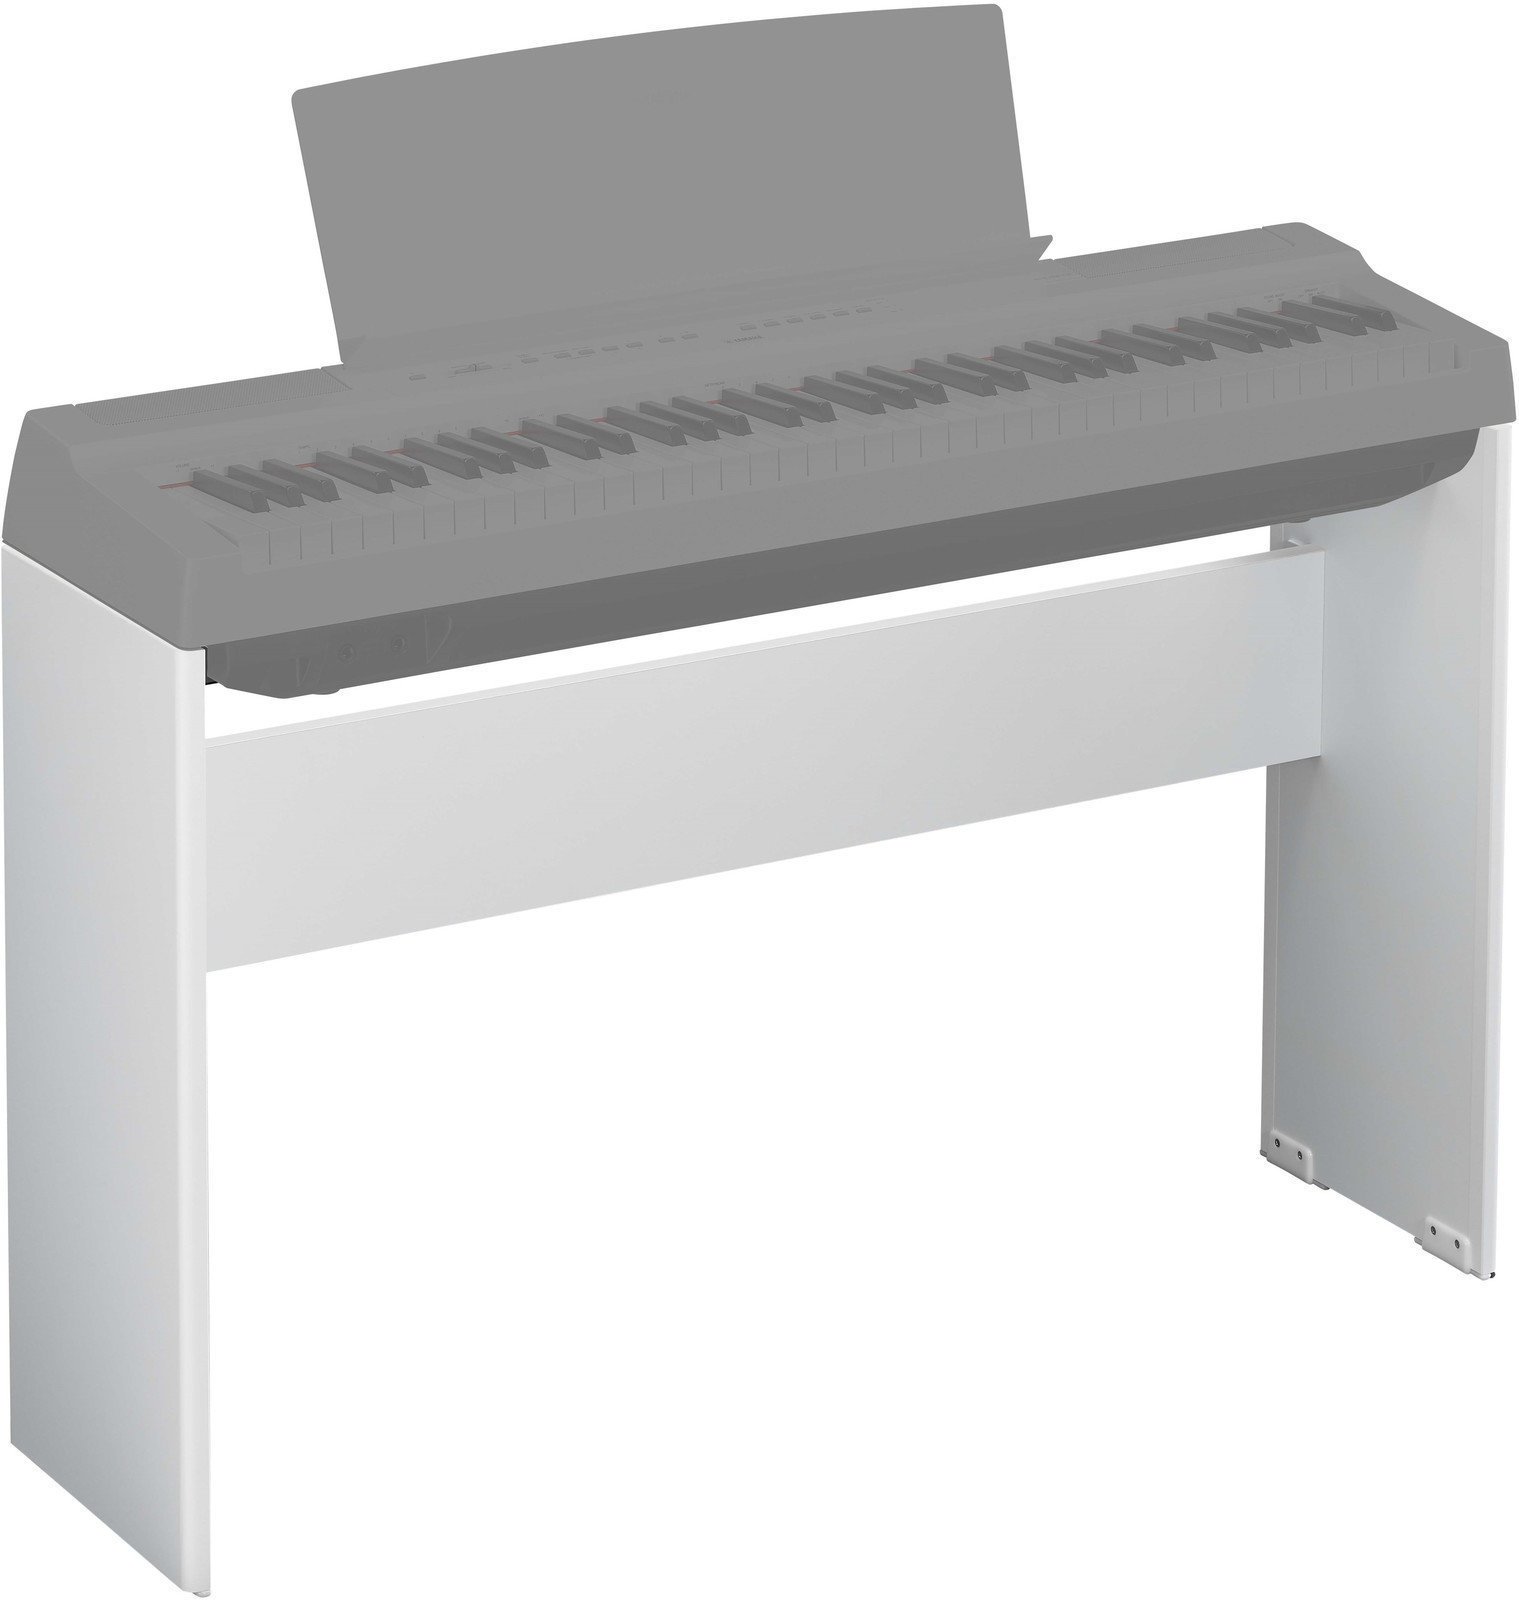 Support de clavier en bois
 Yamaha L-121 Blanc